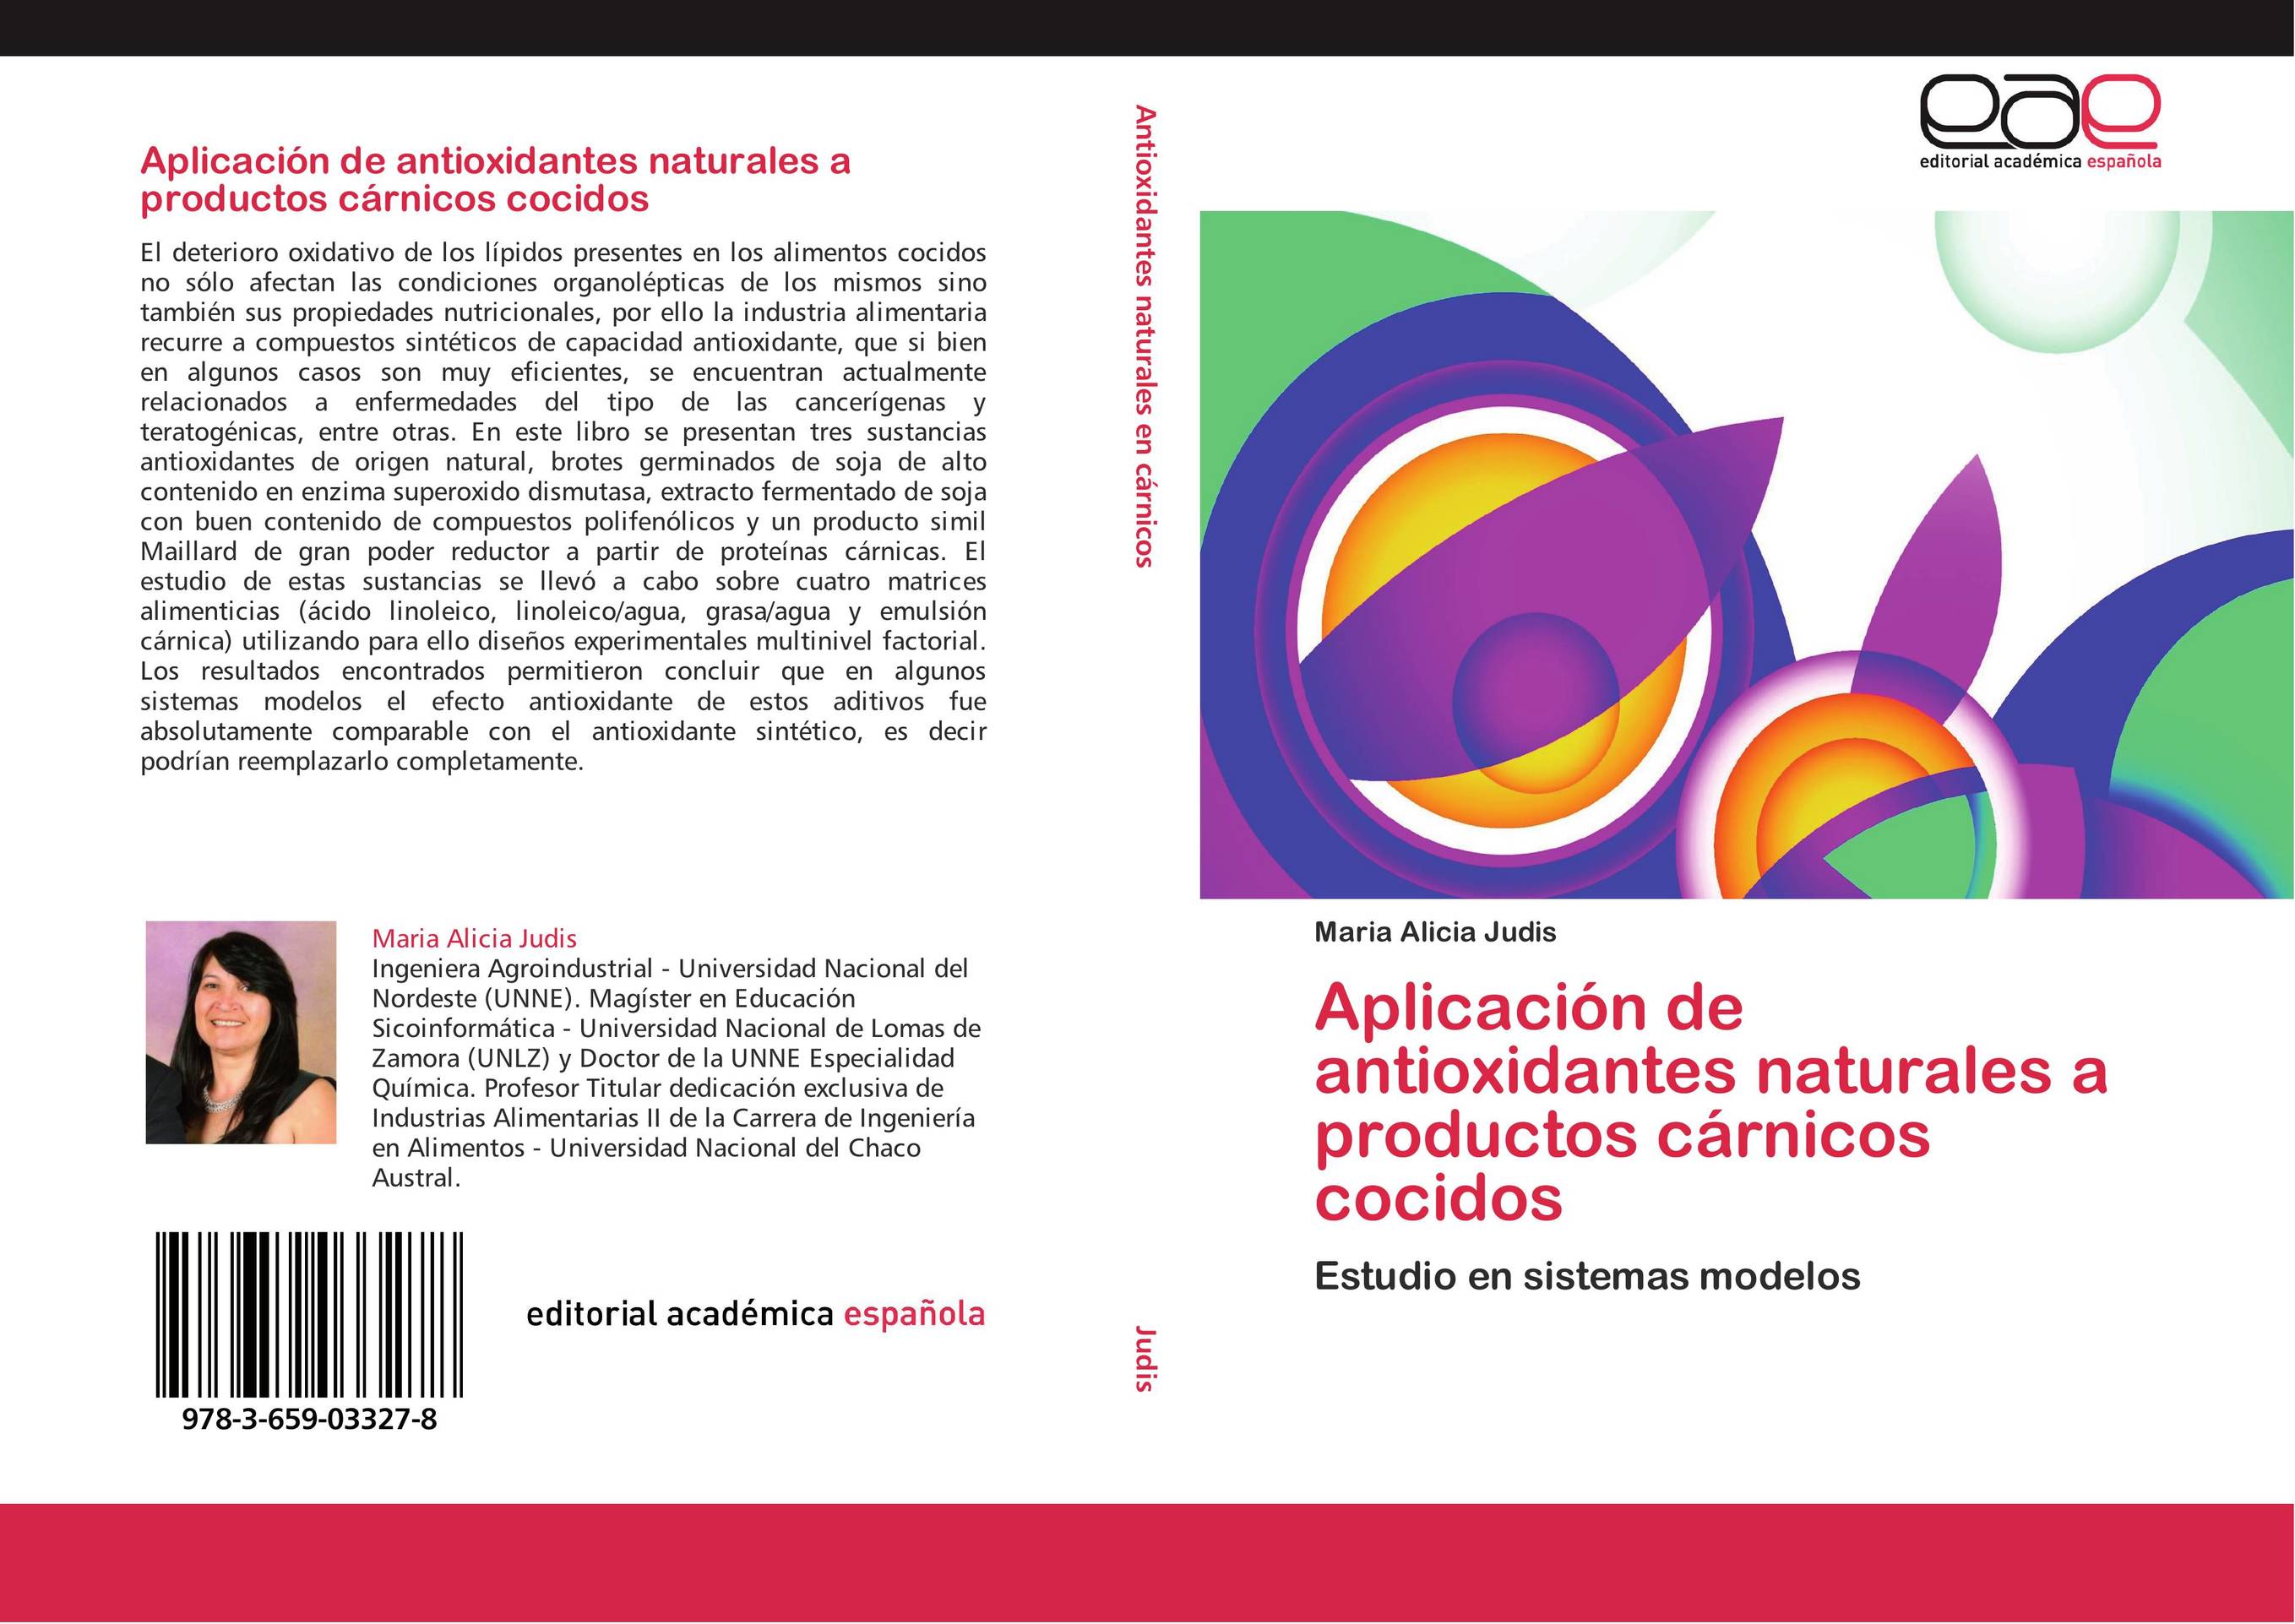 Aplicación de antioxidantes naturales a productos cárnicos cocidos